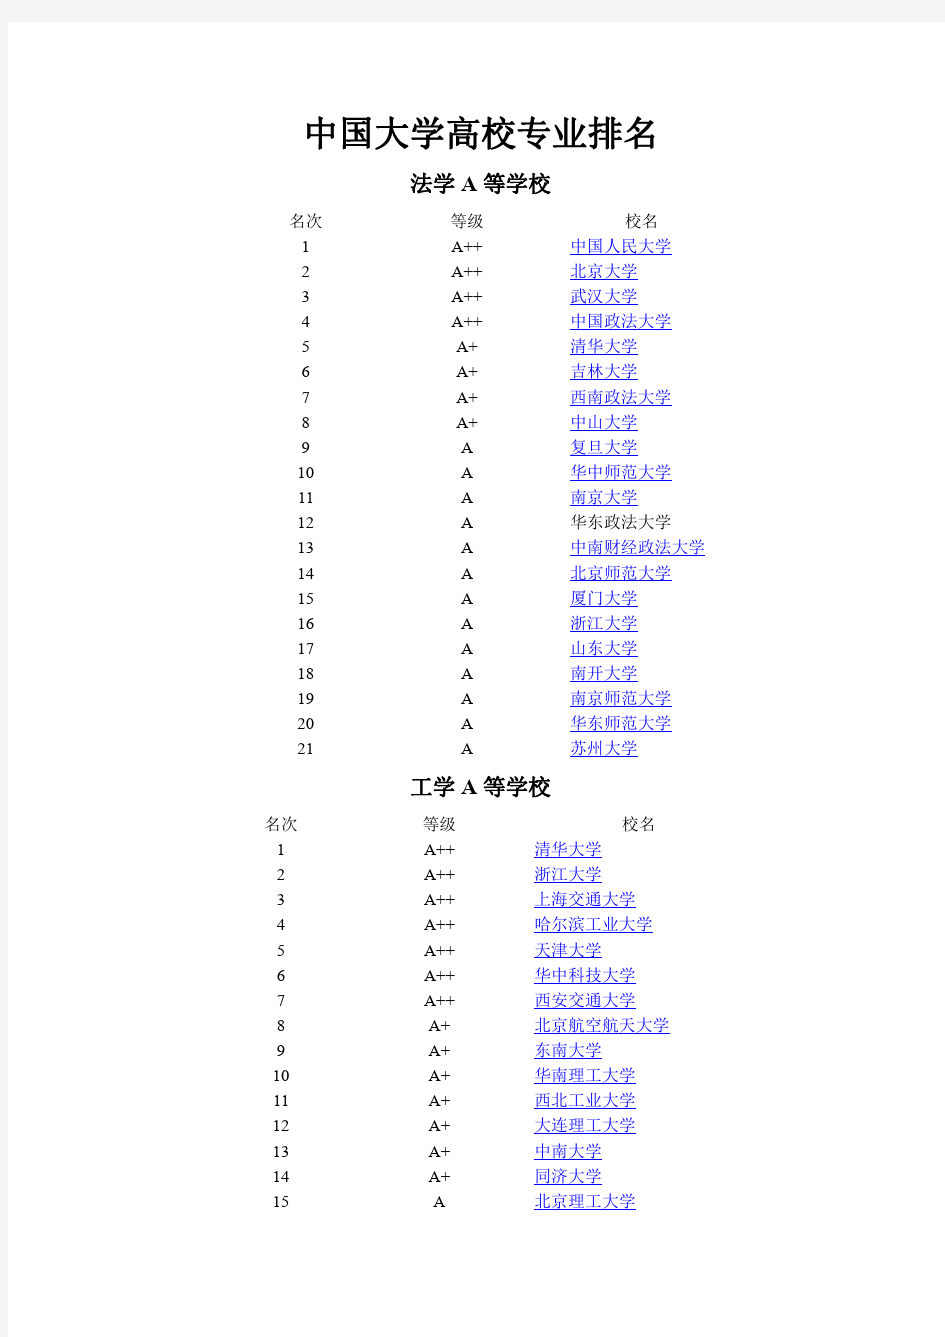 中国大学高校各类专业排名